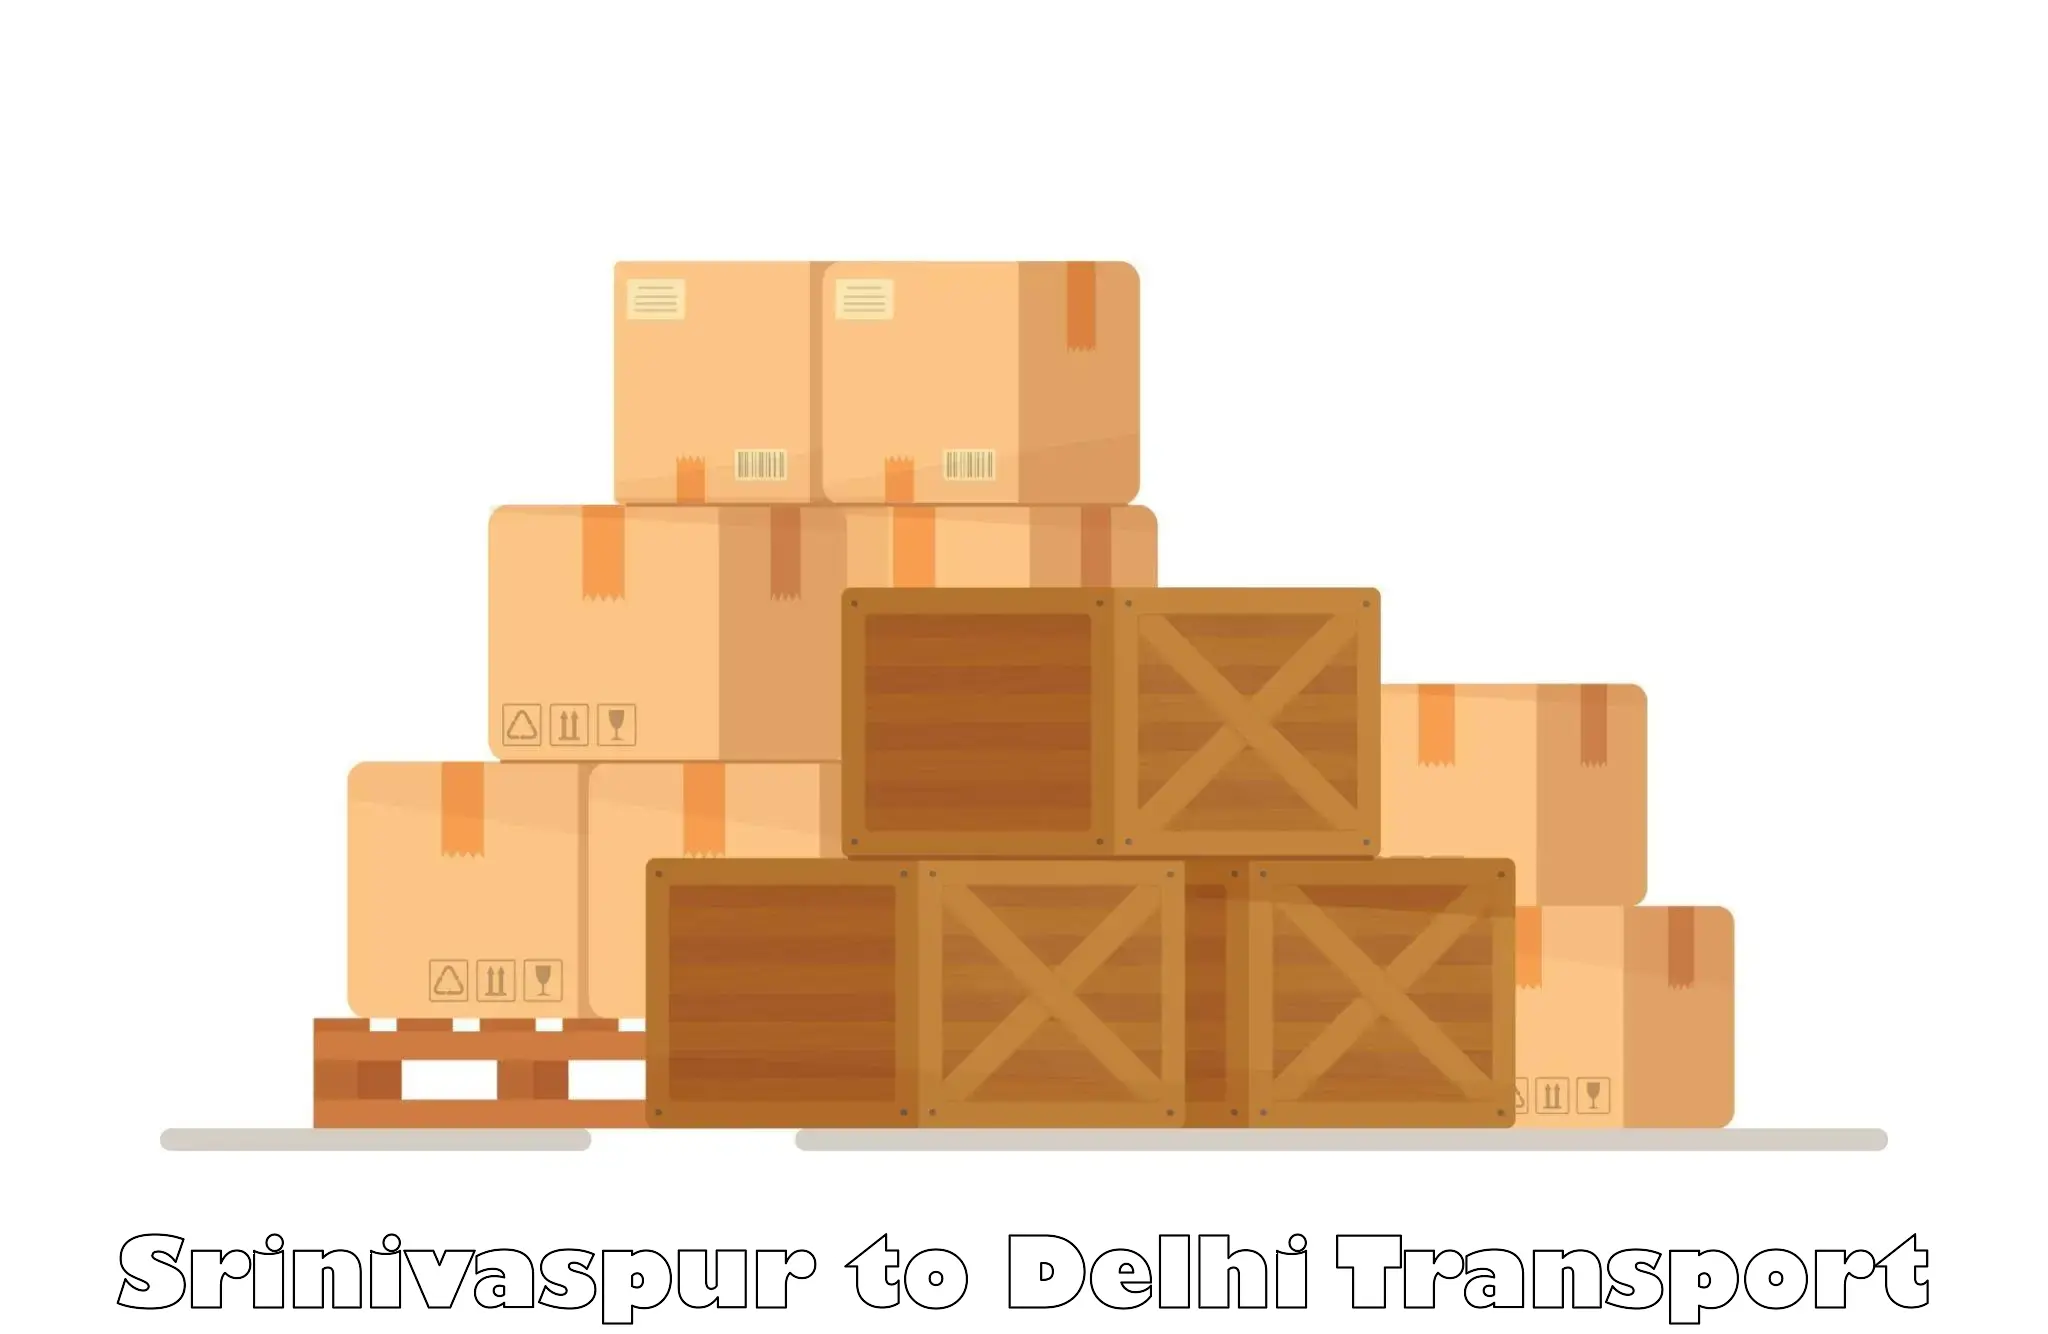 Transportation solution services Srinivaspur to Jawaharlal Nehru University New Delhi